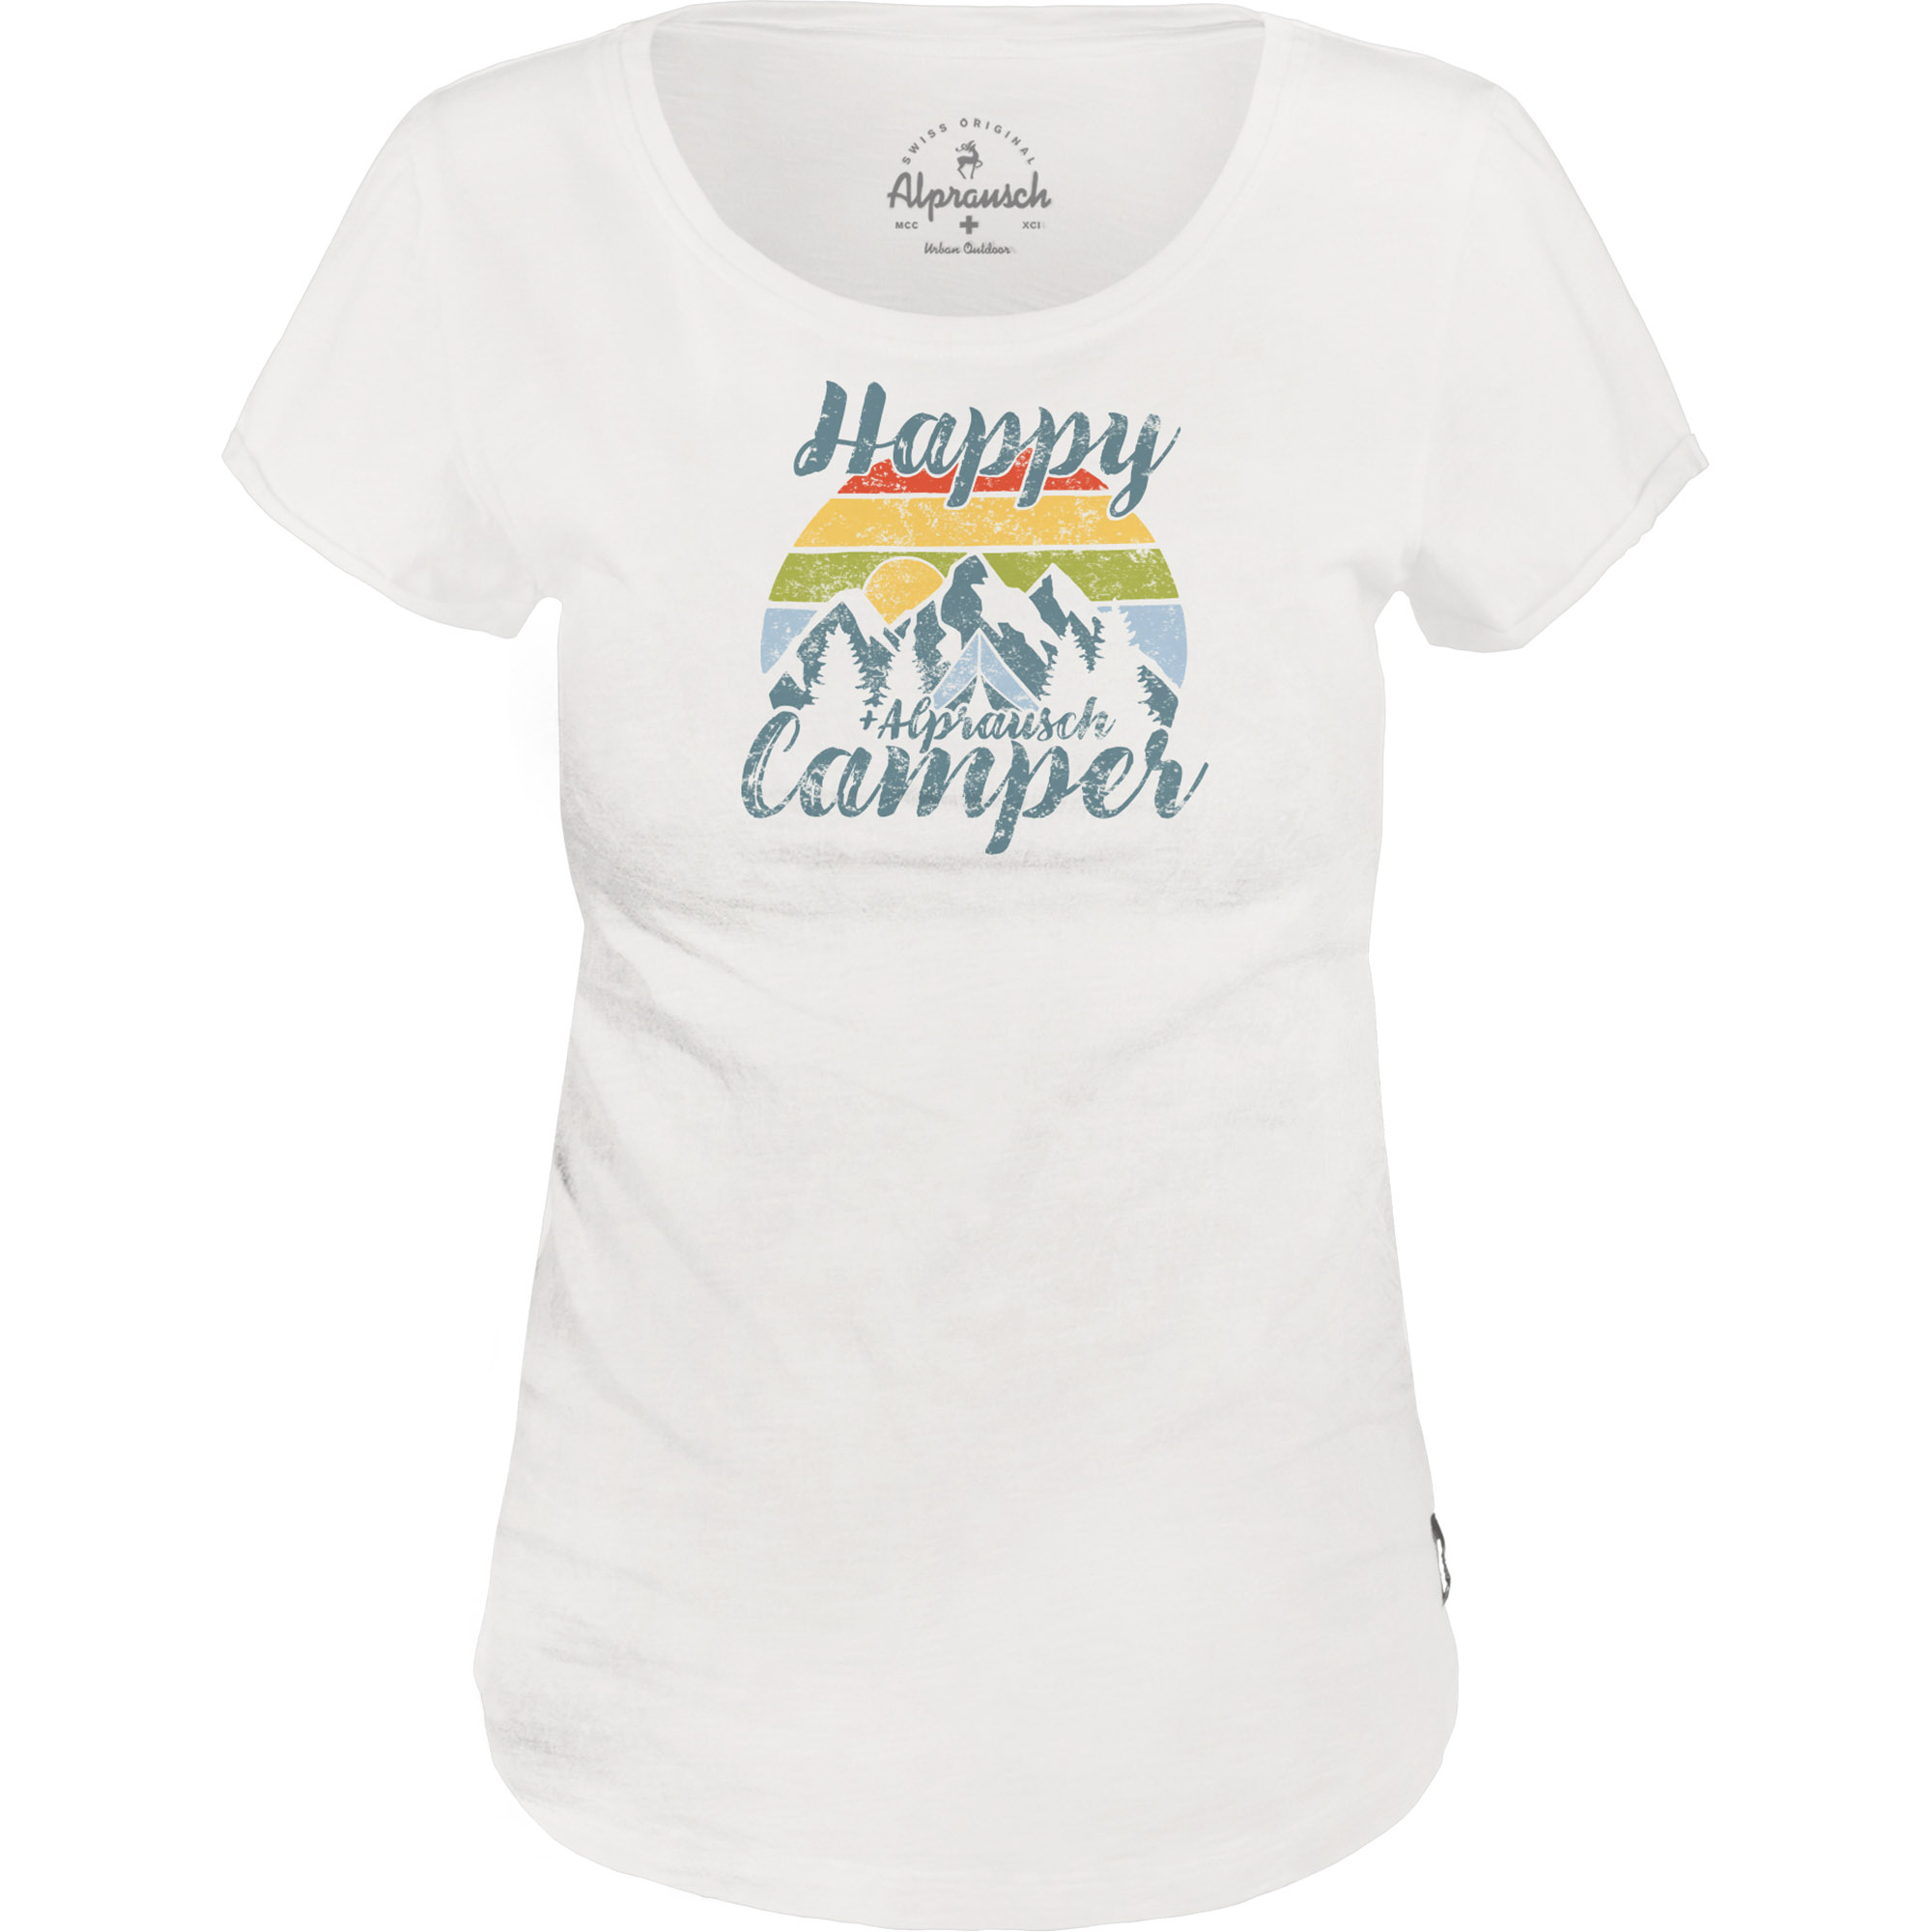 Hippie-Camper T-Shirt